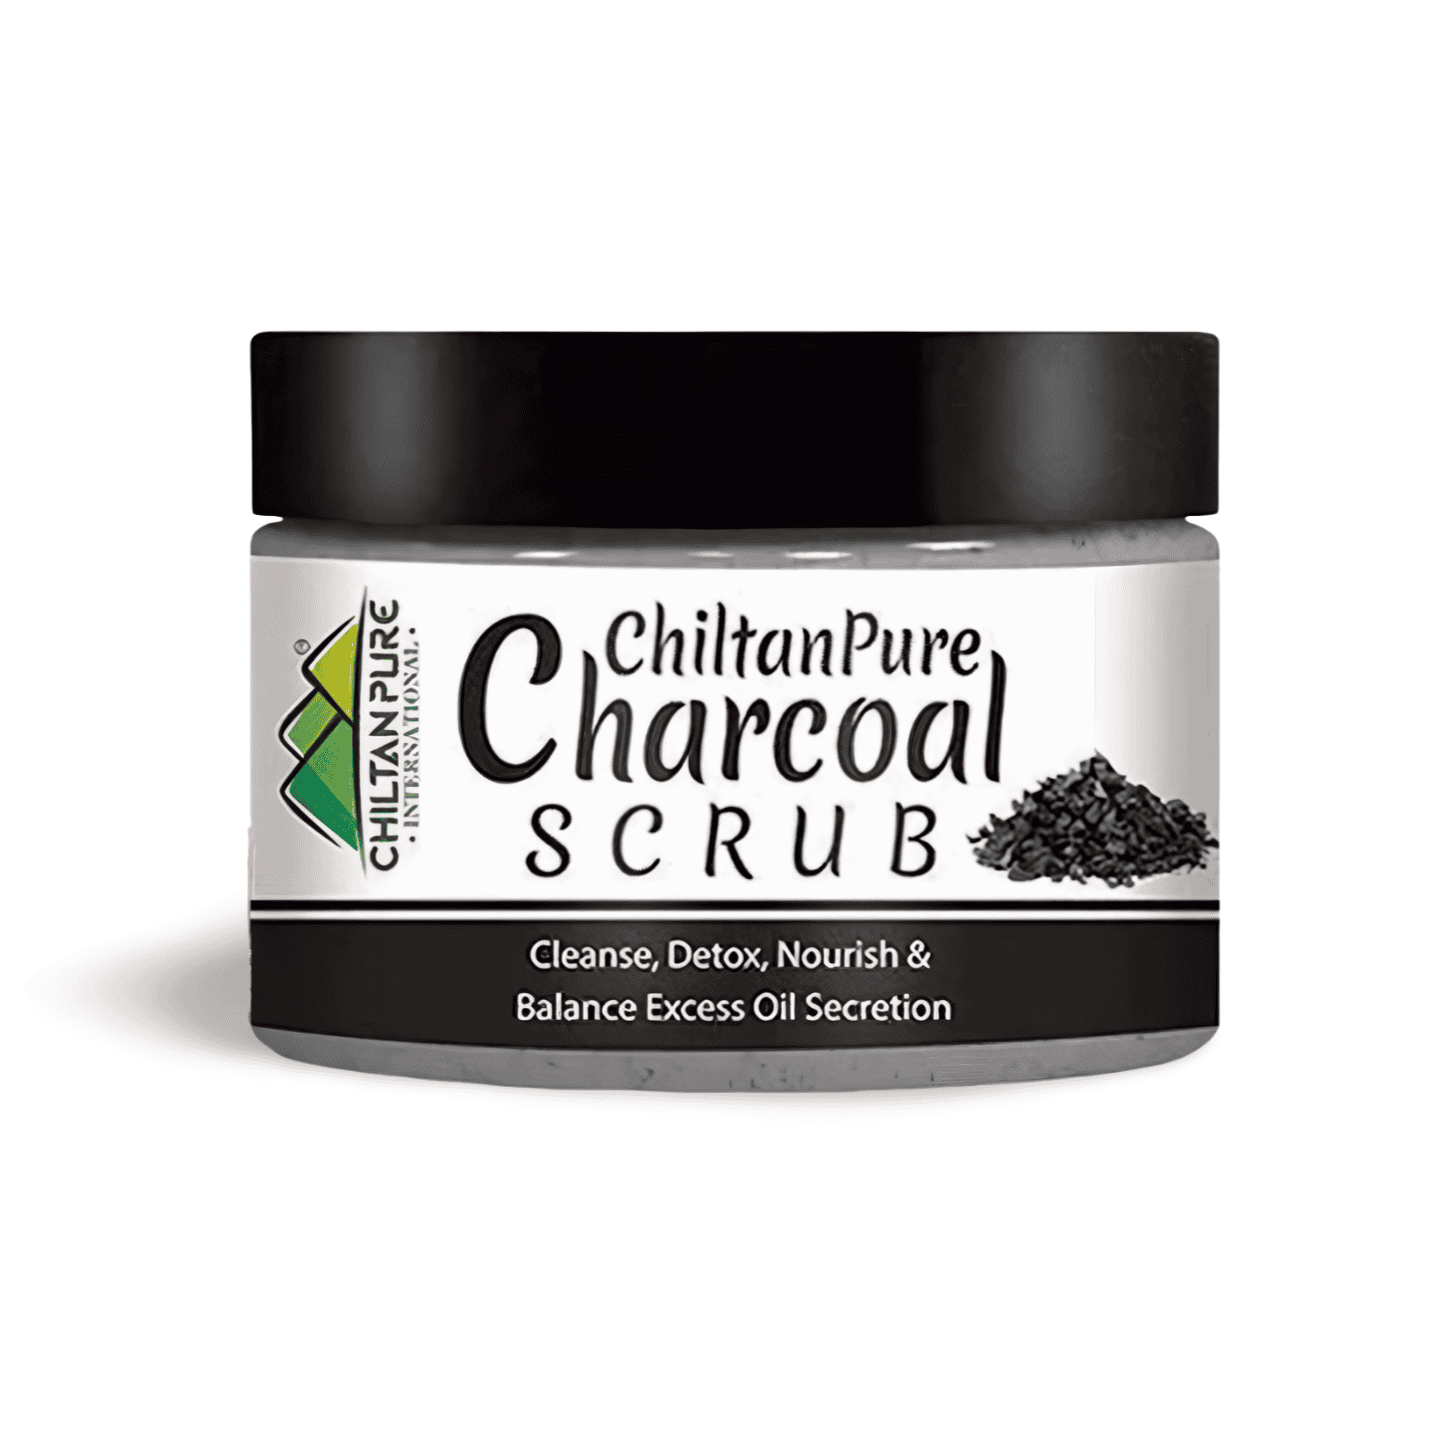 Chiltan Pure Charcoal Scrub